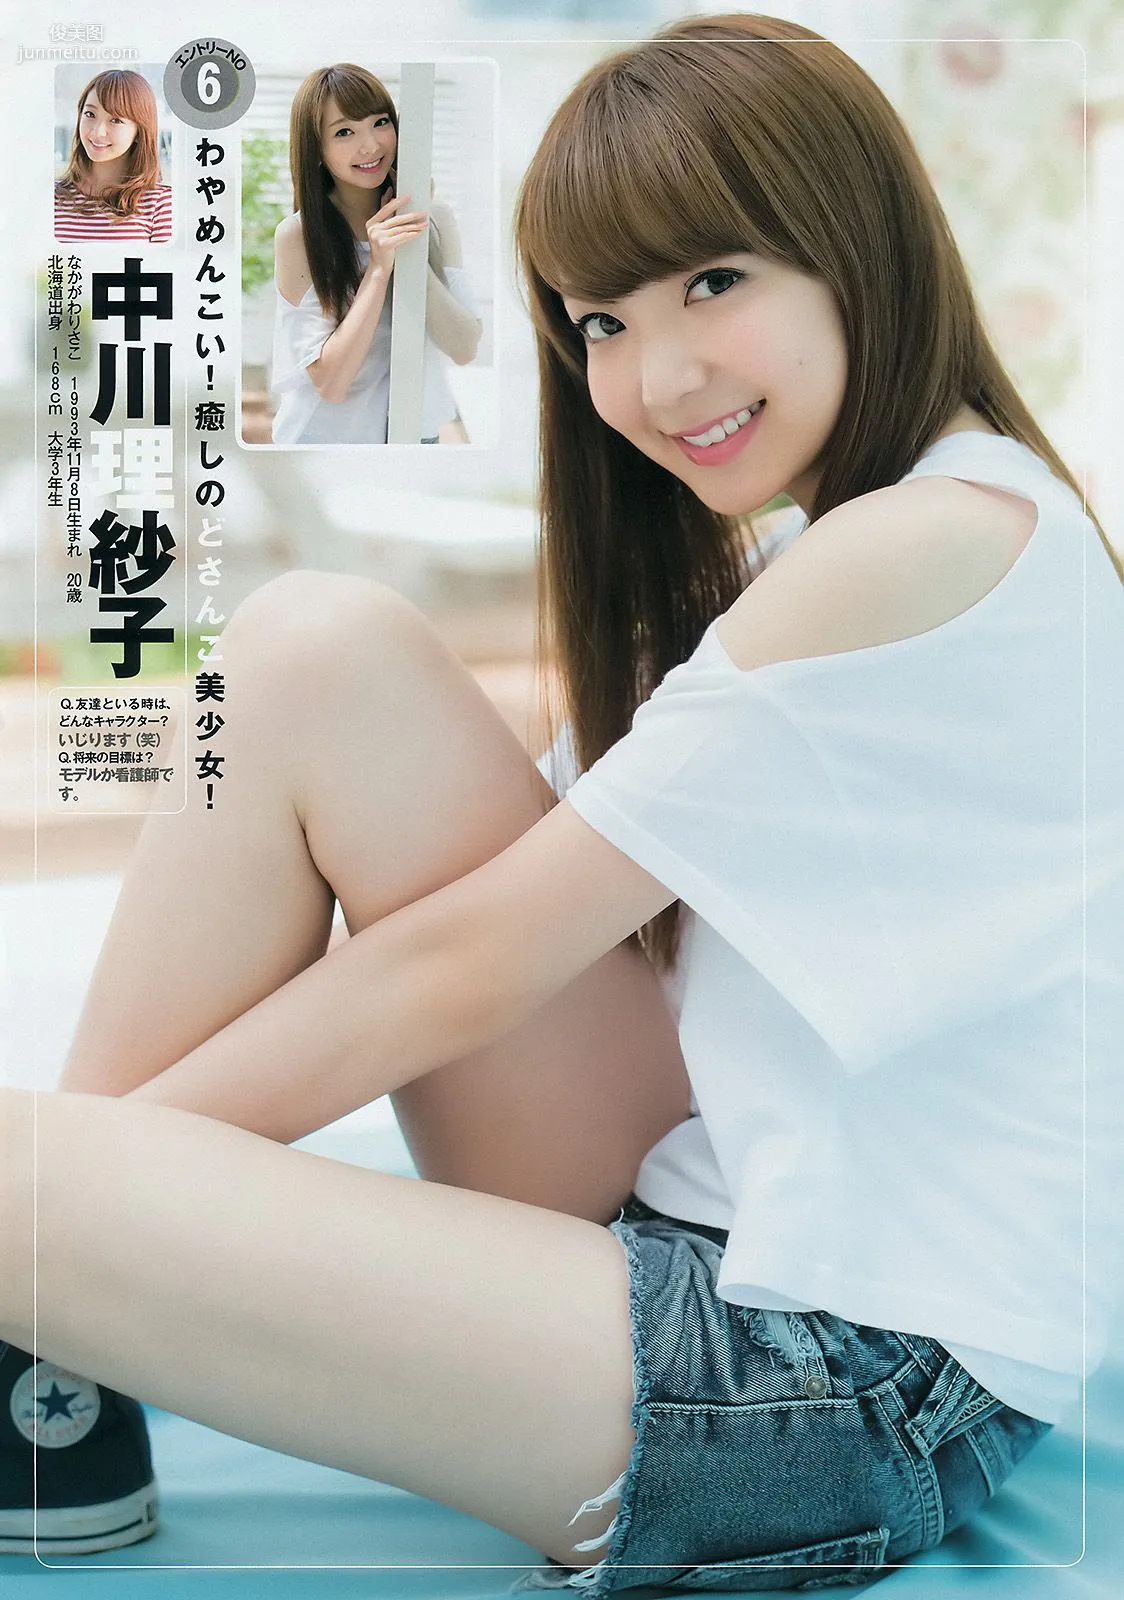 ギャルコン2014 制コレ アルティメット2014 大阪DAIZY7 [Weekly Young Jump] 2014年No.42 写真杂志7